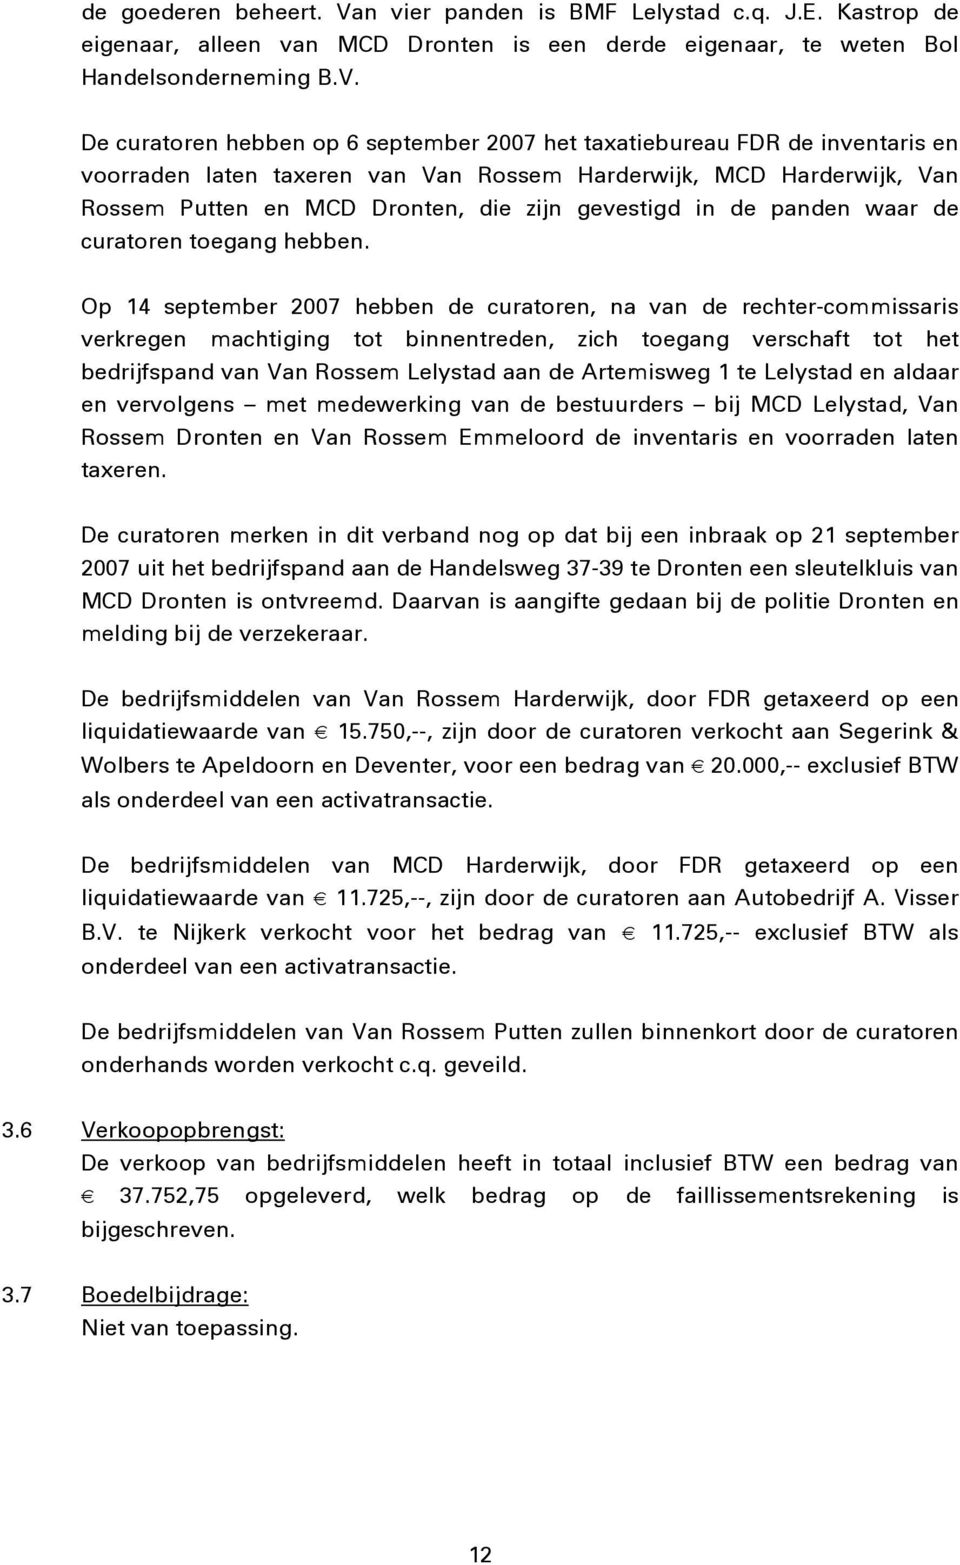 De curatoren hebben op 6 september 2007 het taxatiebureau FDR de inventaris en voorraden laten taxeren van Van Rossem Harderwijk, MCD Harderwijk, Van Rossem Putten en MCD Dronten, die zijn gevestigd